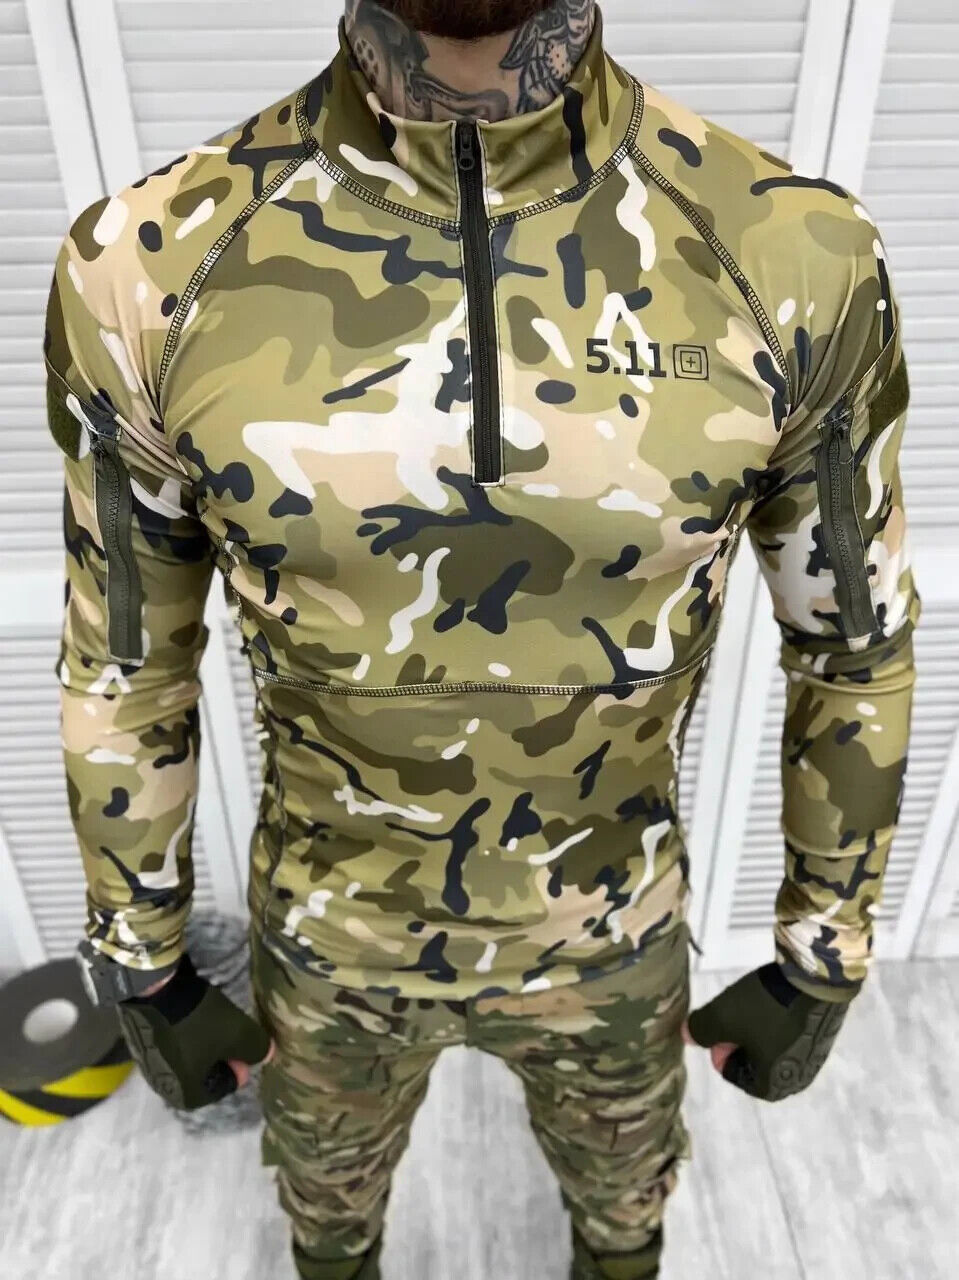 Tactical summer jacket ubaks multicam 5.11, Army shirt multicam field